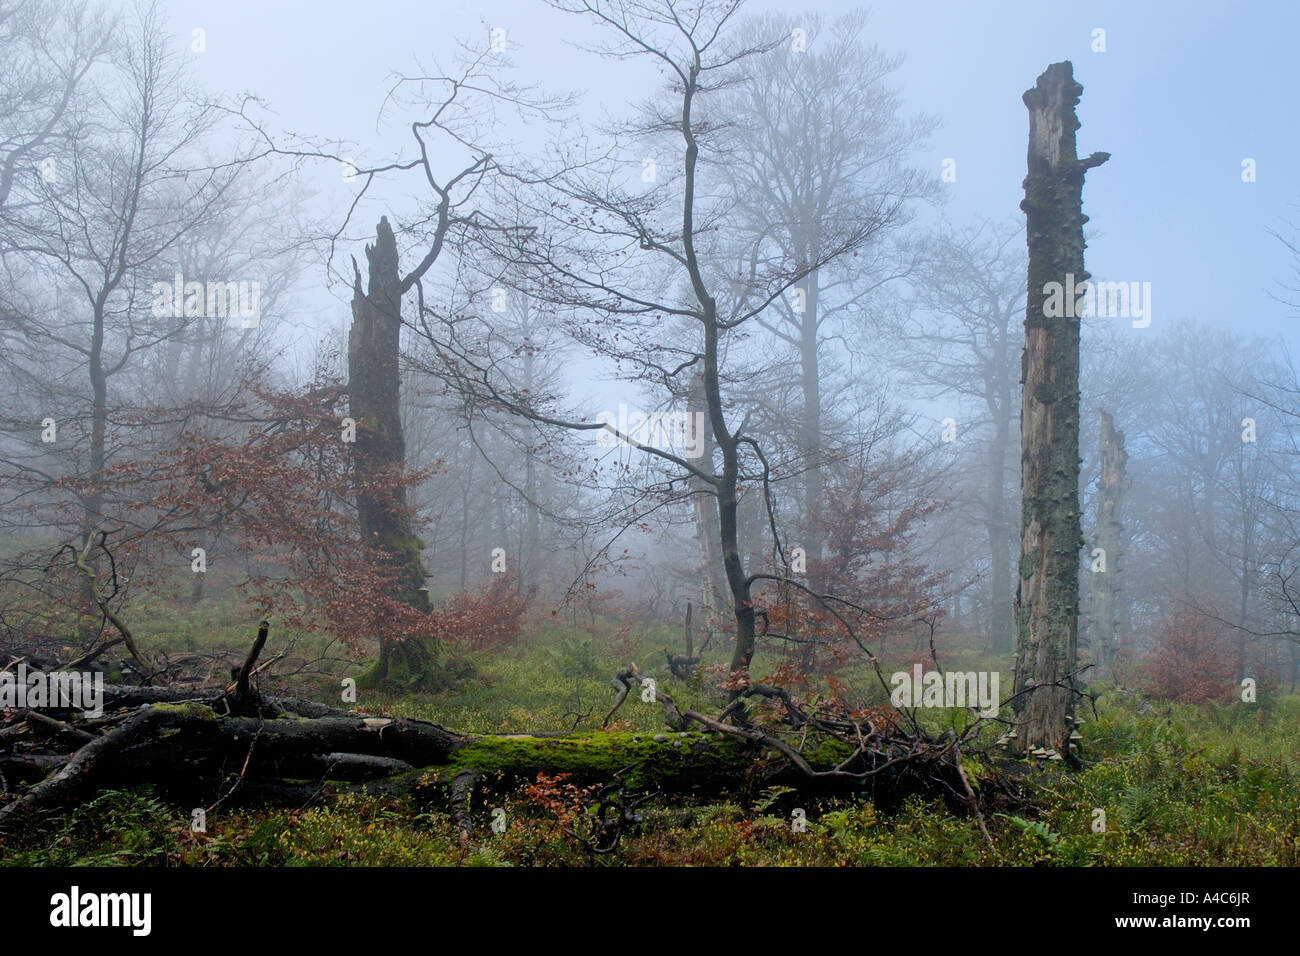 Le hêtre commun (Fagus sylvatica). Forêt de hêtres dans le brouillard. Banque D'Images